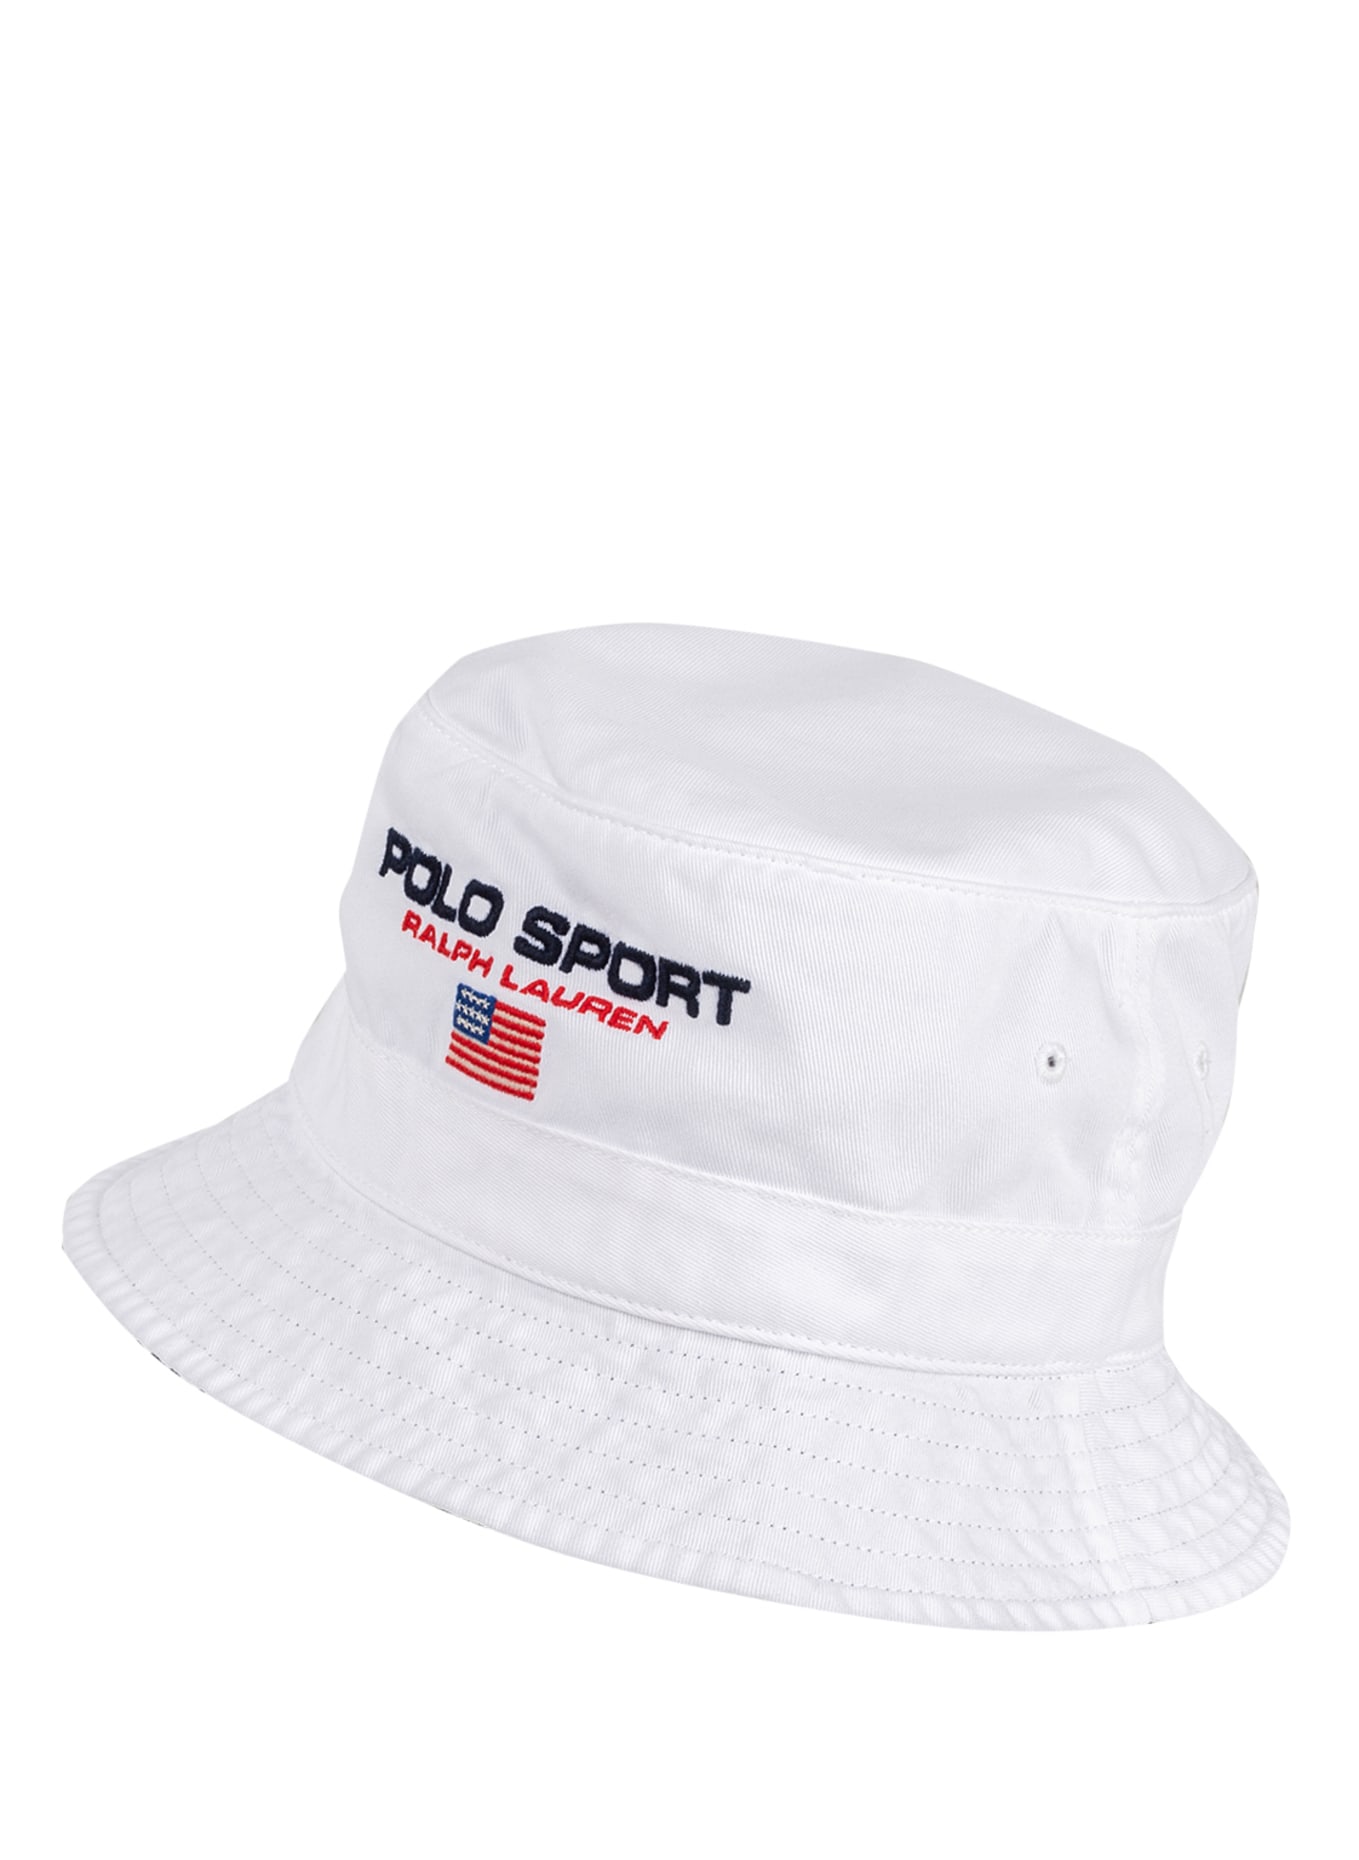 POLO SPORT Bucket-Hat , Farbe: WEISS (Bild 2)